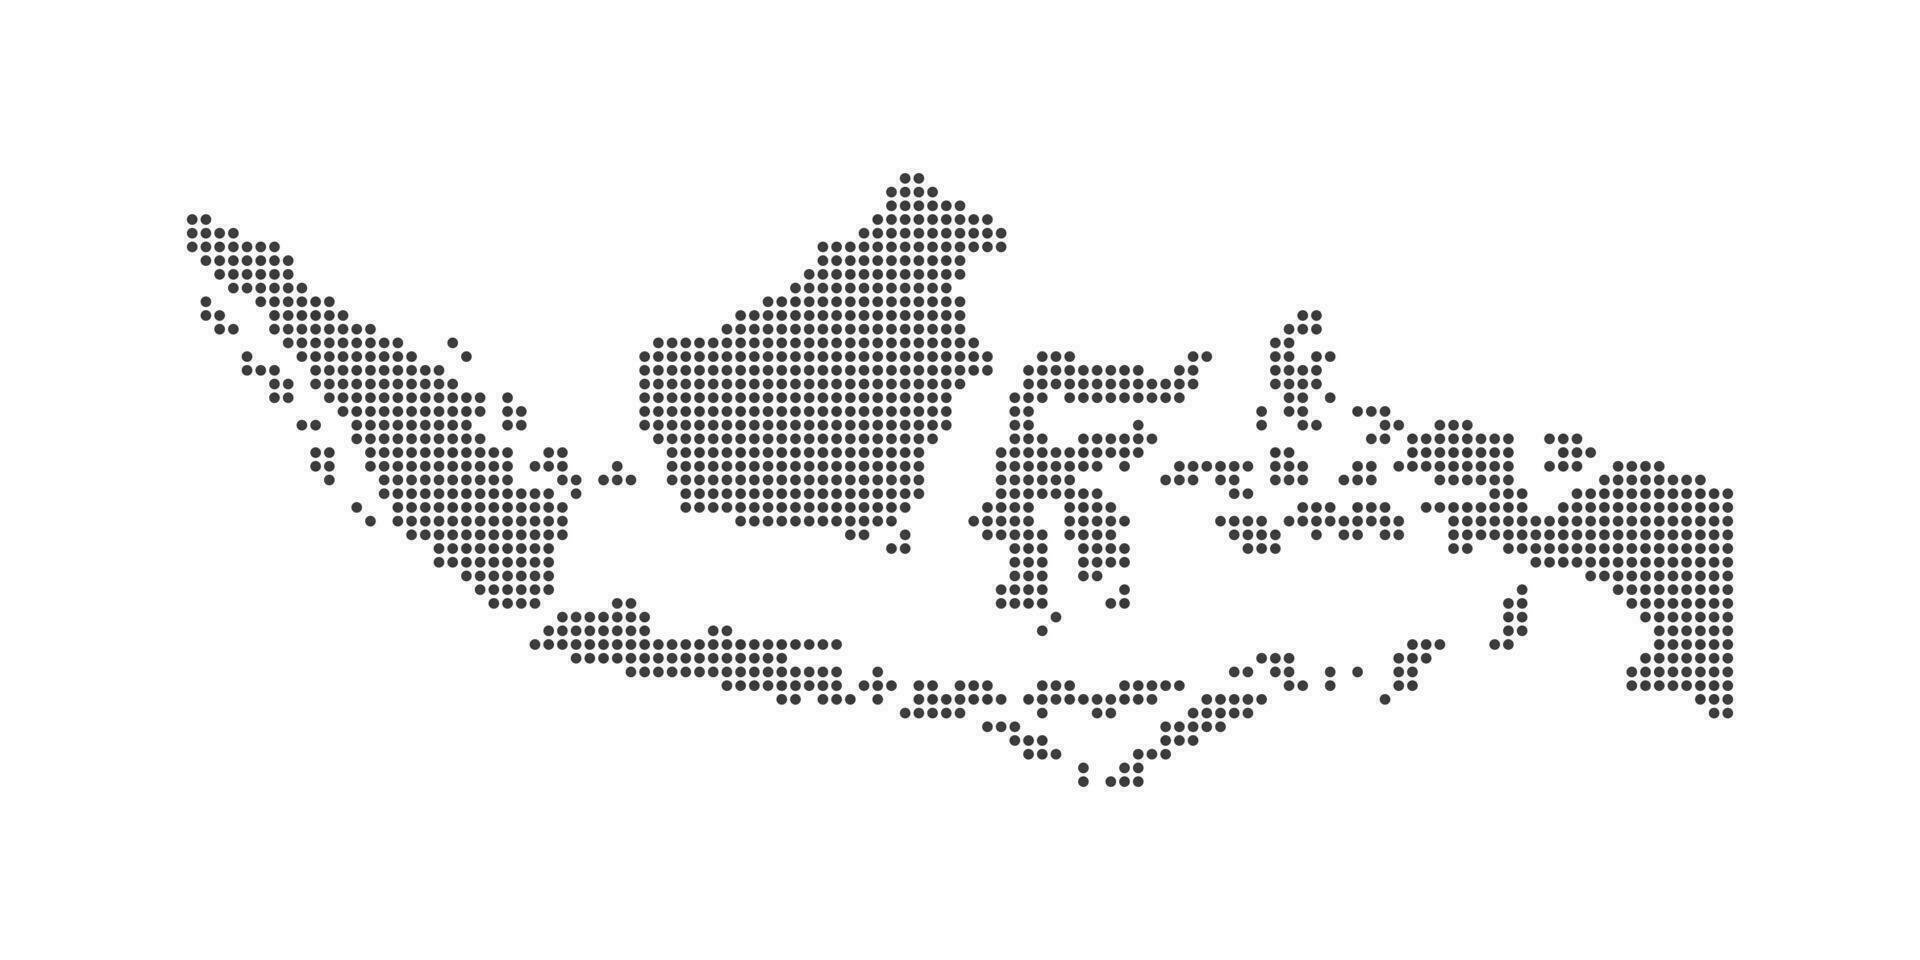 indonesiano carta geografica vettore illustrazione. indonesiano carta geografica icona